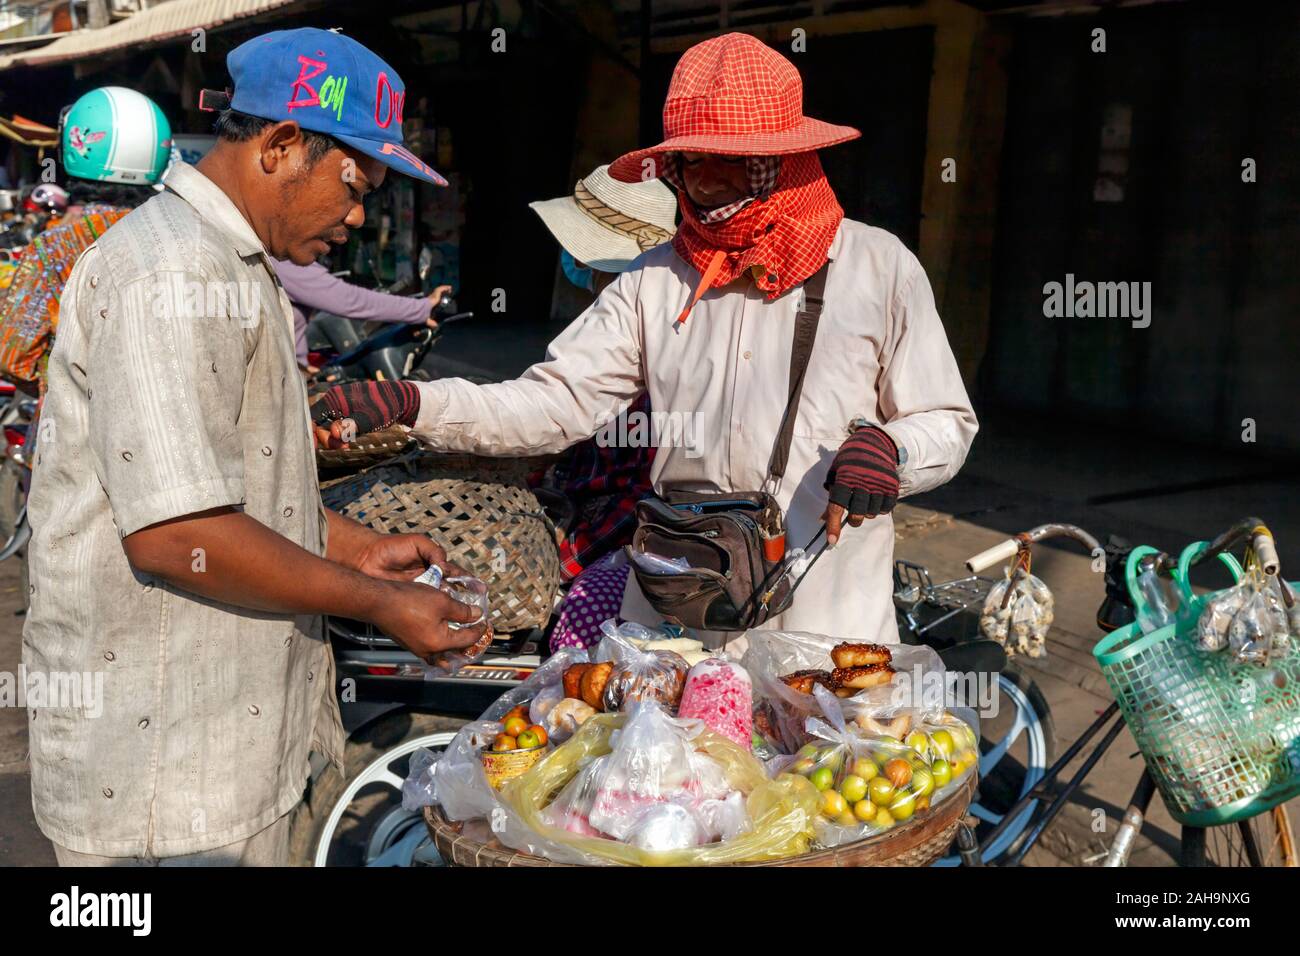 Ein asiatischer Mann kauft Lebensmittel von einer Frau verkaufen Obst, Wüste und Donuts zu Ihrem Fahrrad auf einer Straße in Kampong Cham, Kambodscha festgeschnallt. Stockfoto